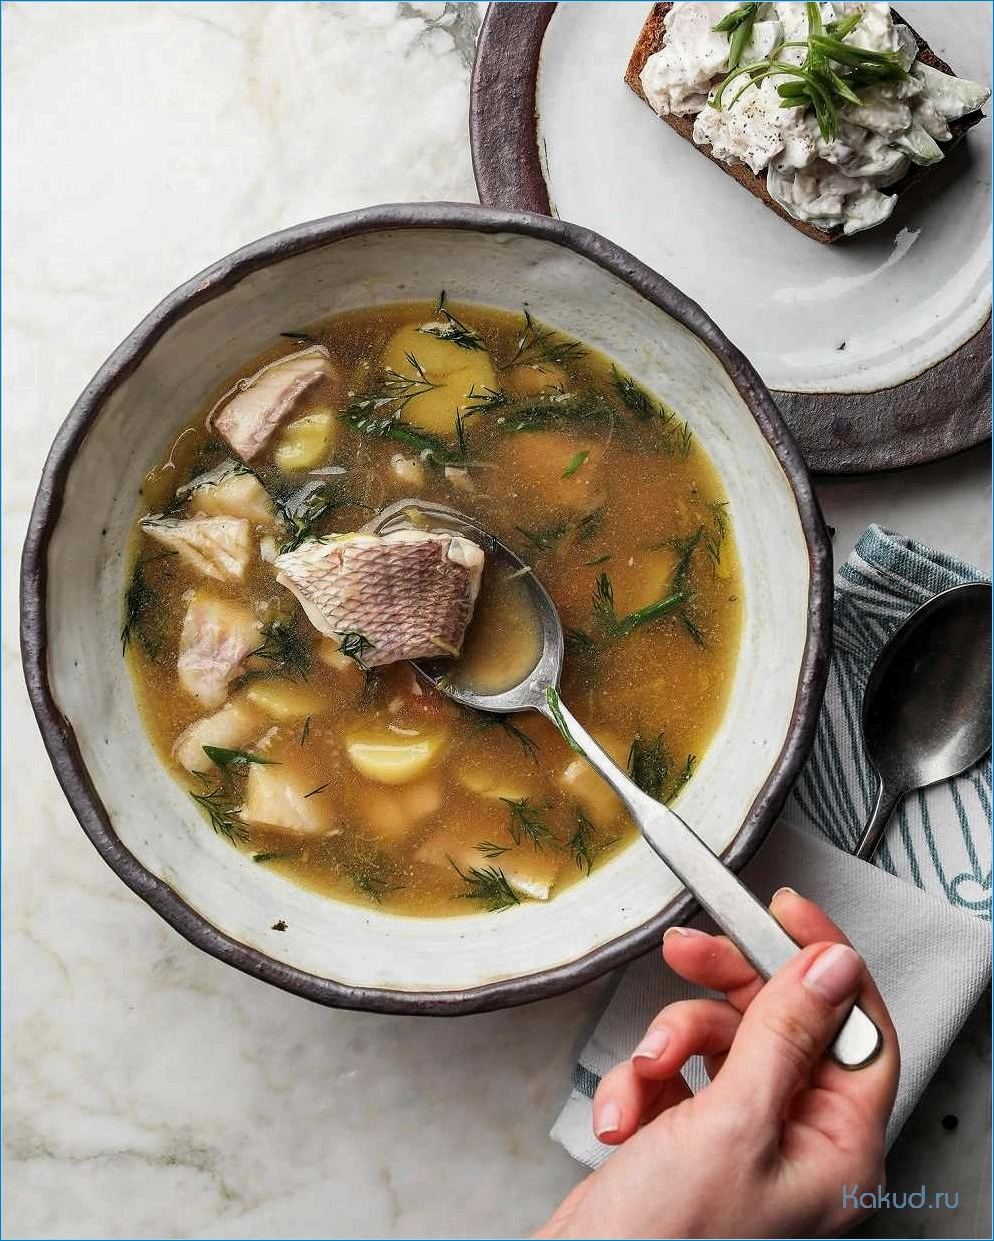 Вкусный и питательный рецепт рыбного супа с добавлением ароматной гречки